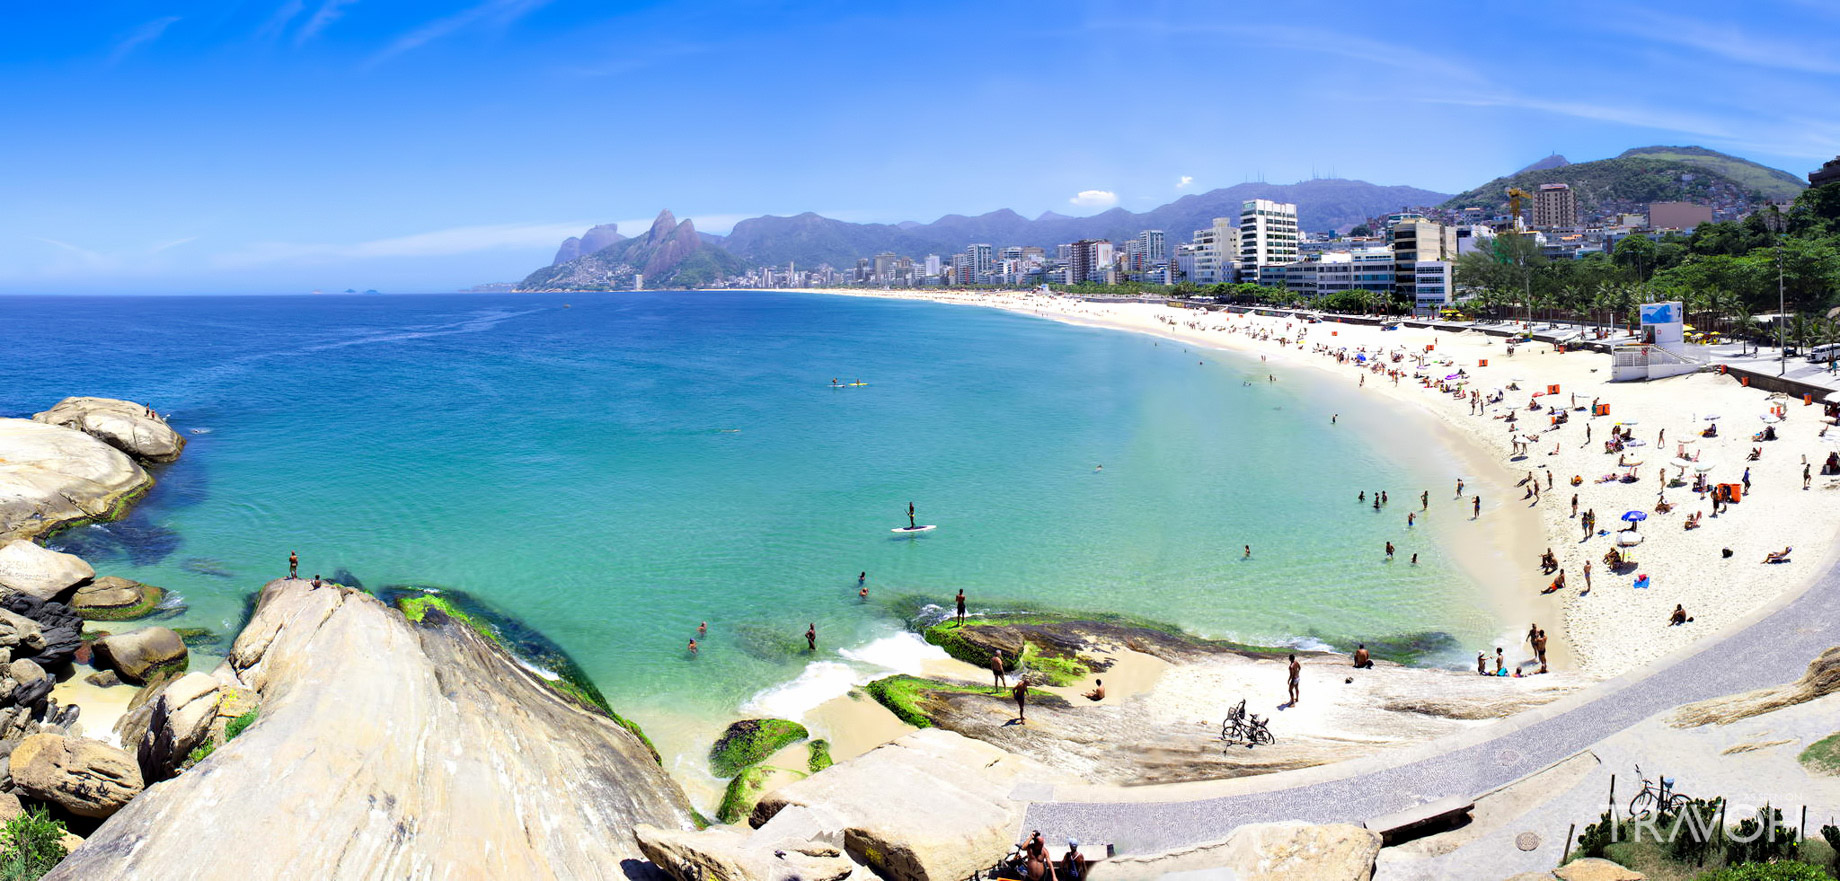 Arpoador Beach – Exploring 10 of the Top Beaches in Rio de Janeiro, Brazil